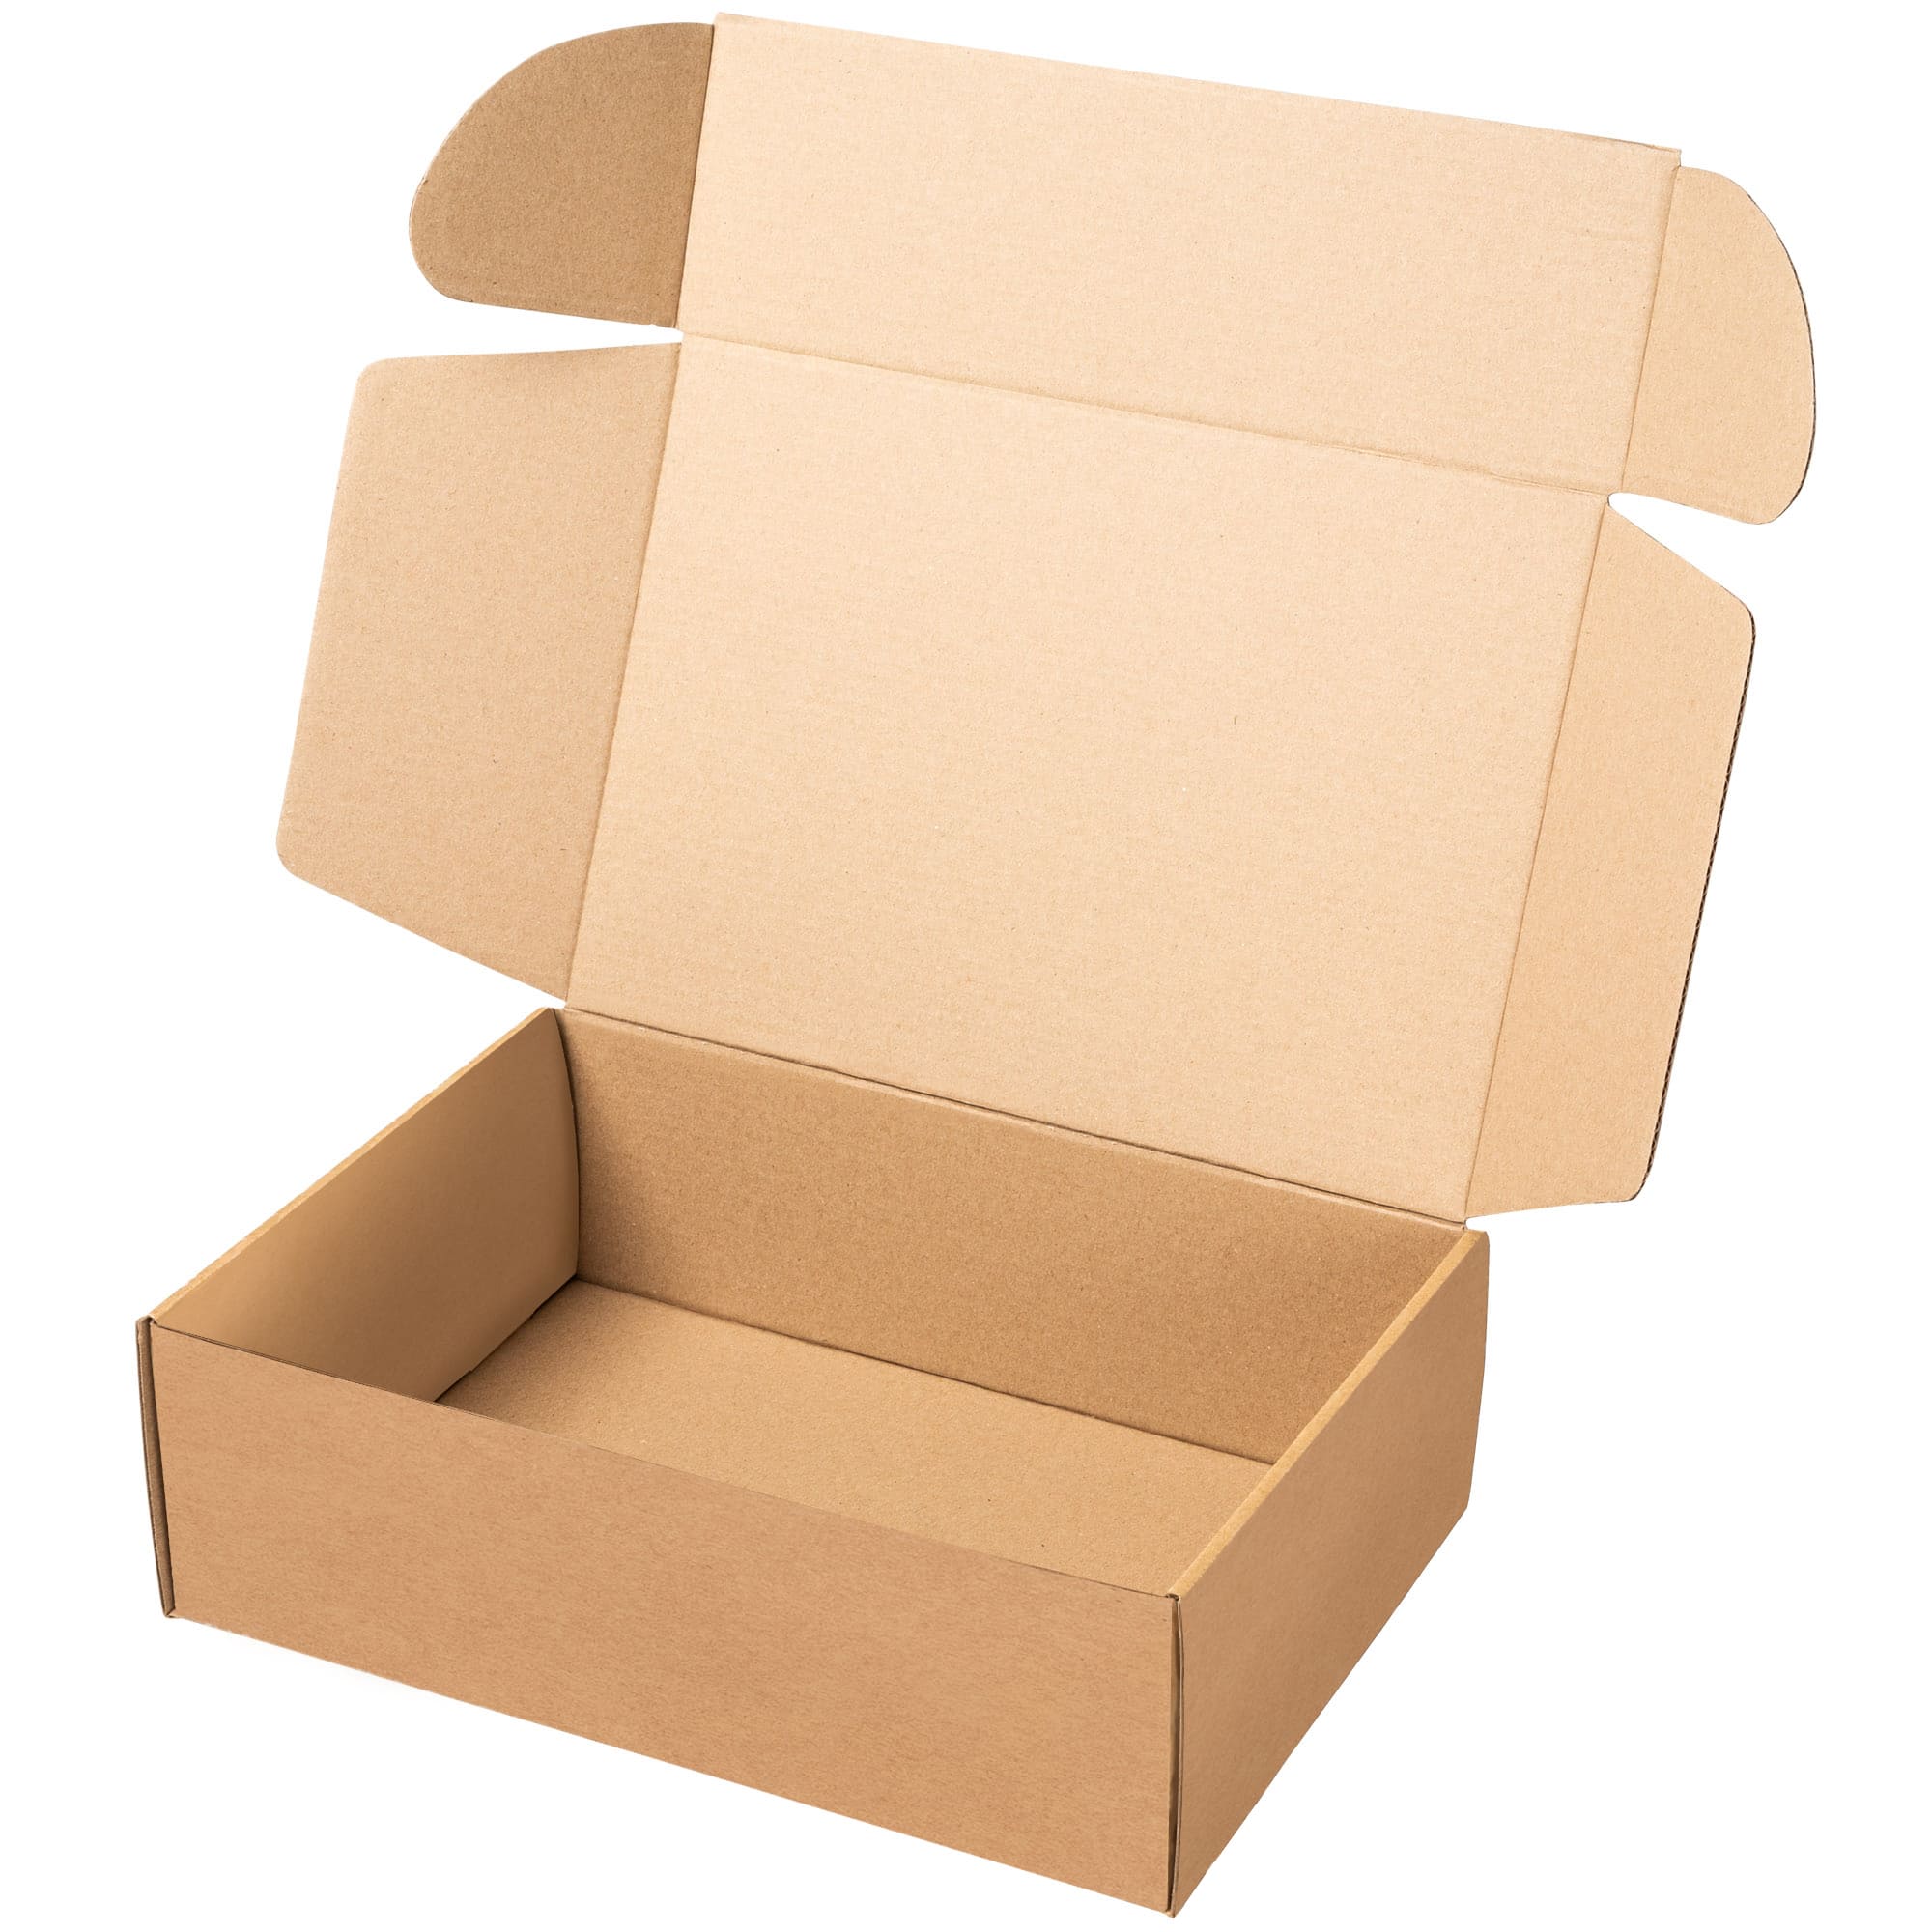 Packer PRO Cajas Carton para Mudanzas y Almacenaje Resistentes con Asas Rojas 43x30x25cm